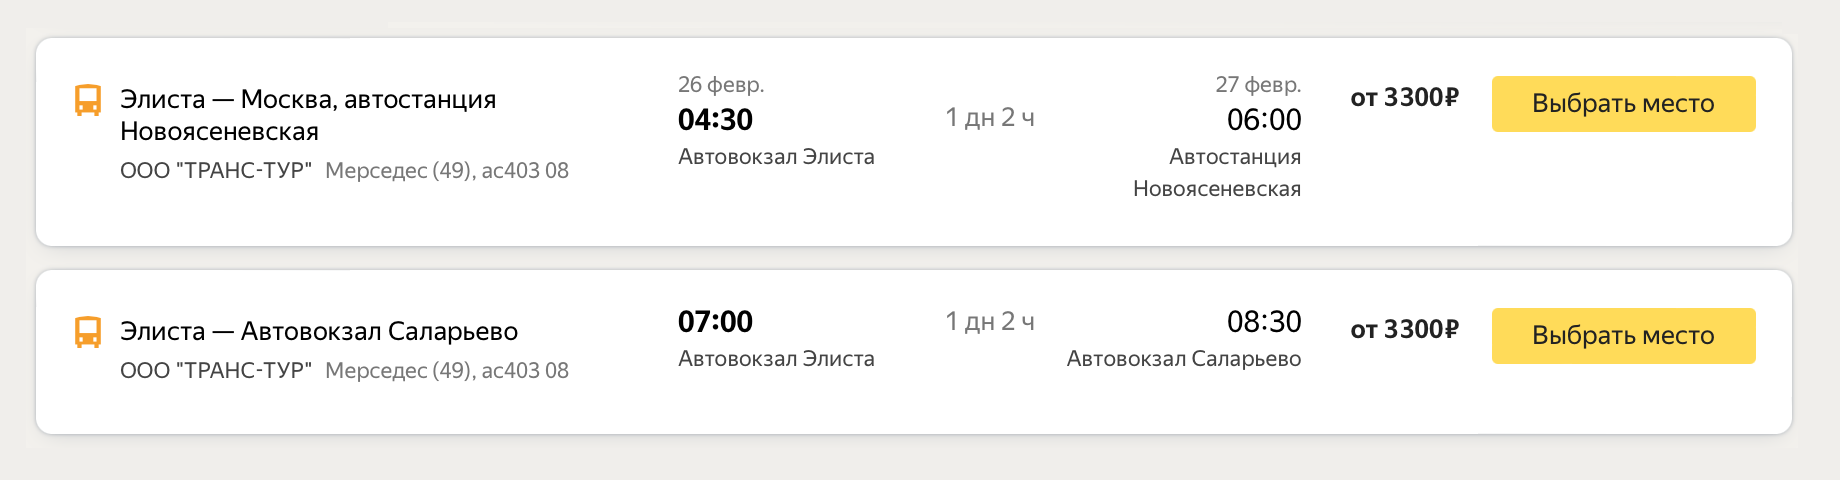 Билет на автобус из Элисты в Москву стоит от 3300 ₽. Источник: «Яндекс-расписания»